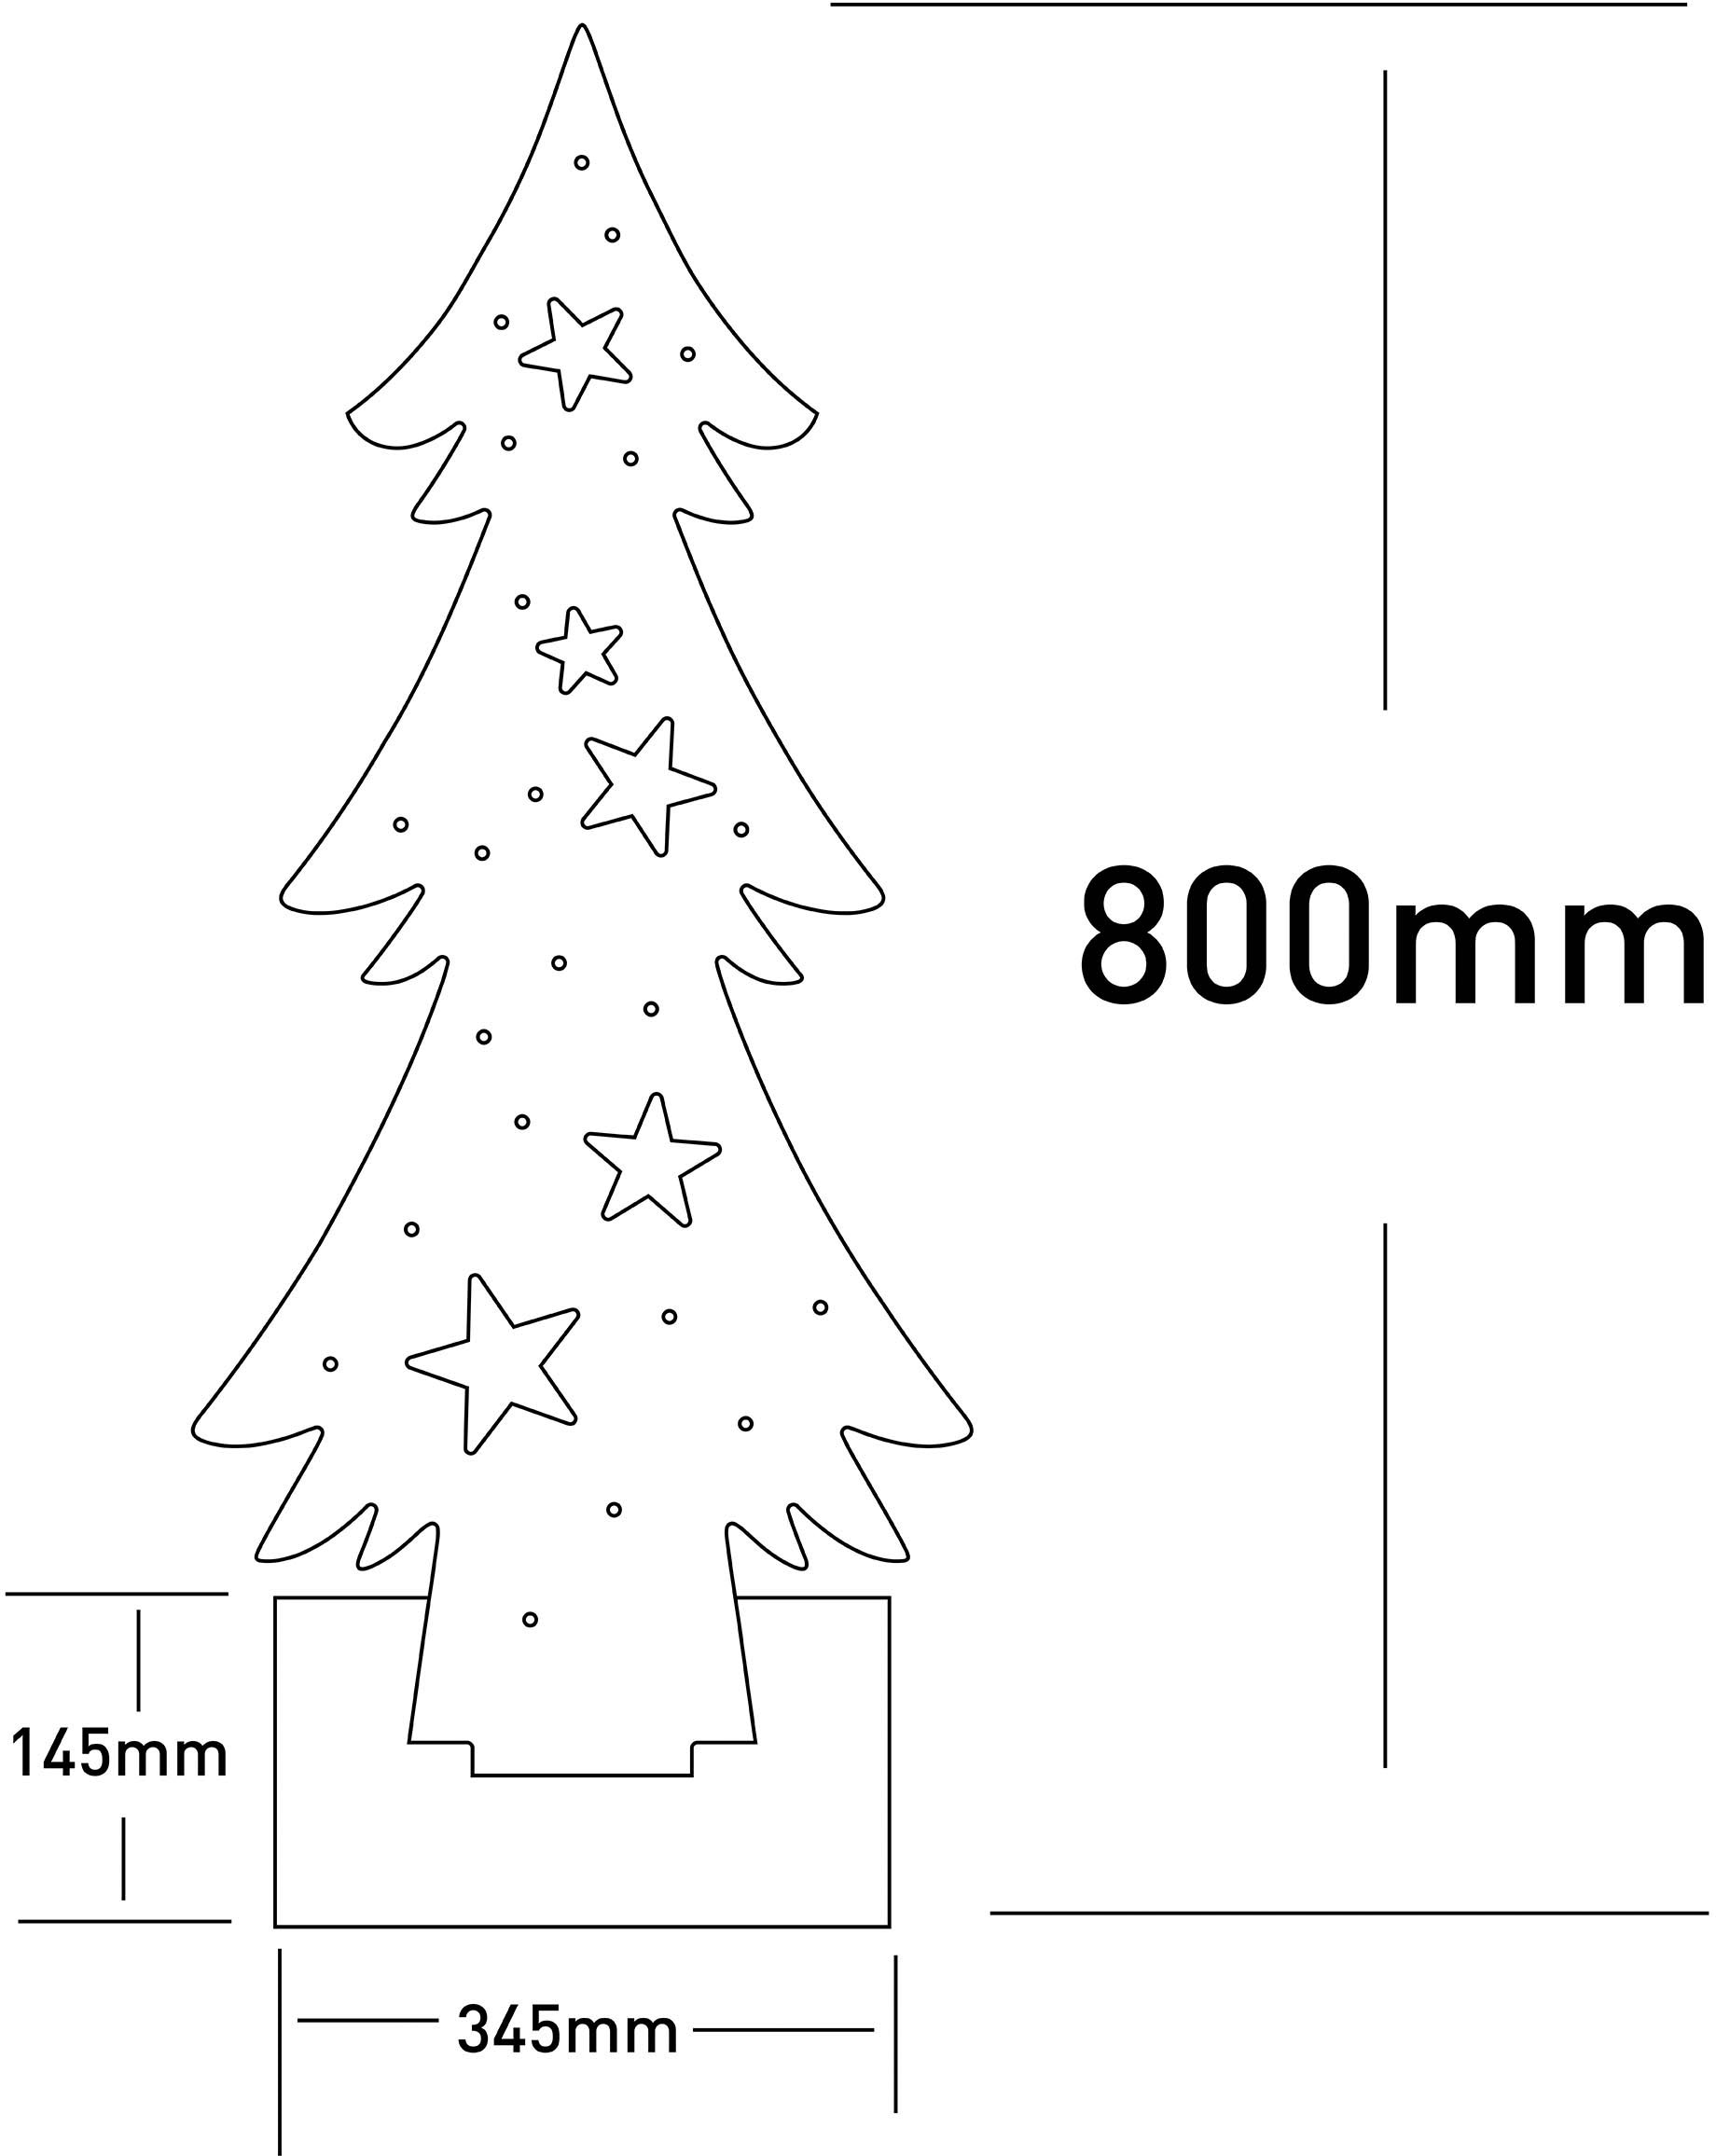 näve LED Baum »Tannenbaum, Weihnachtsdeko aus Holz«, Holz-Stehleuchte, Höhe ca. 80 cm, Batteriebetrieben